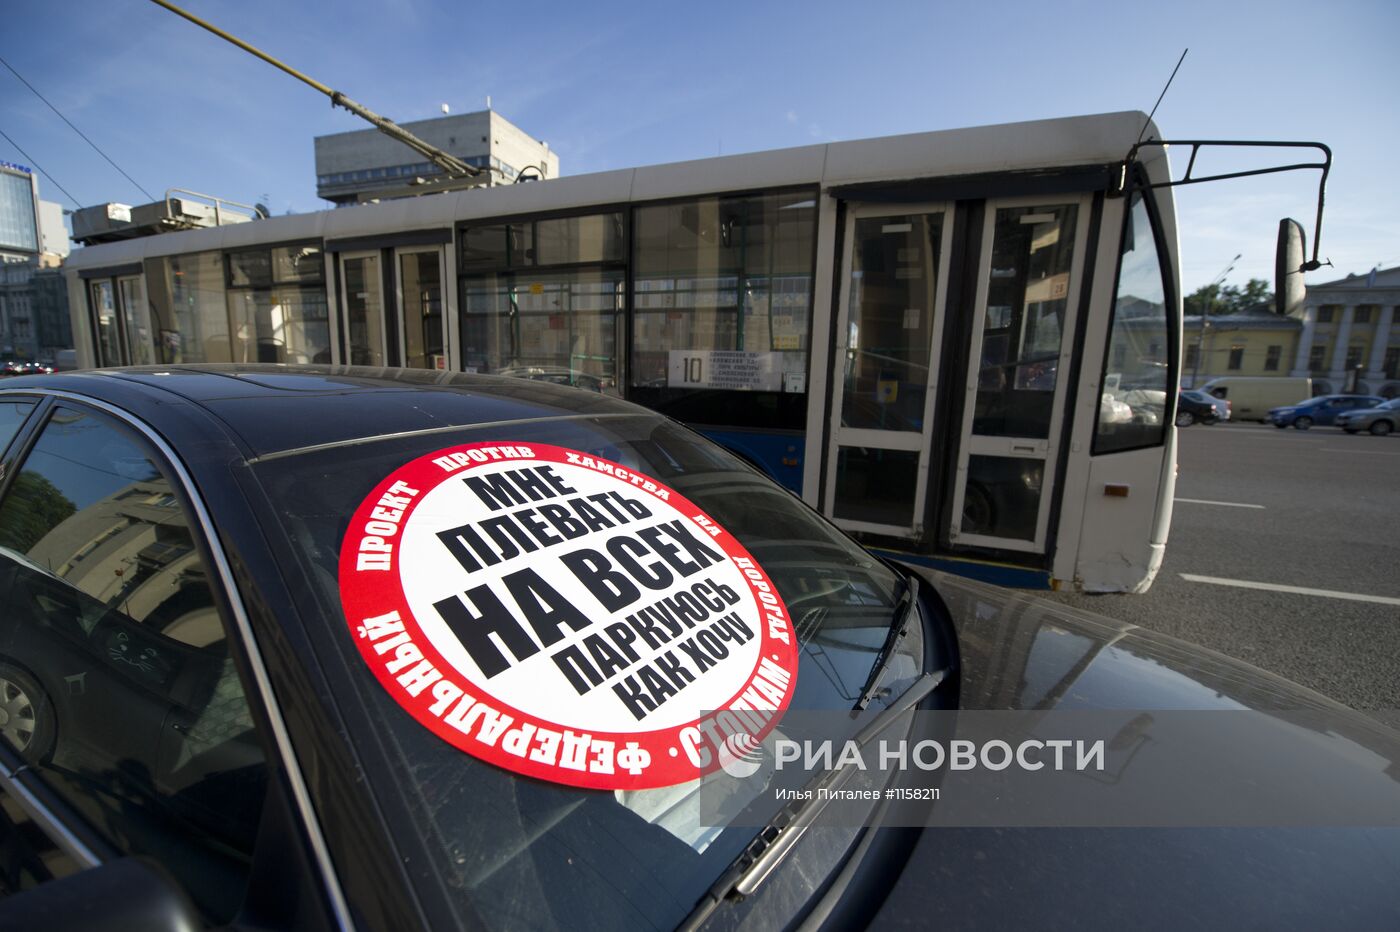 Наклейка "Стопхам" на автомобиле в Москве